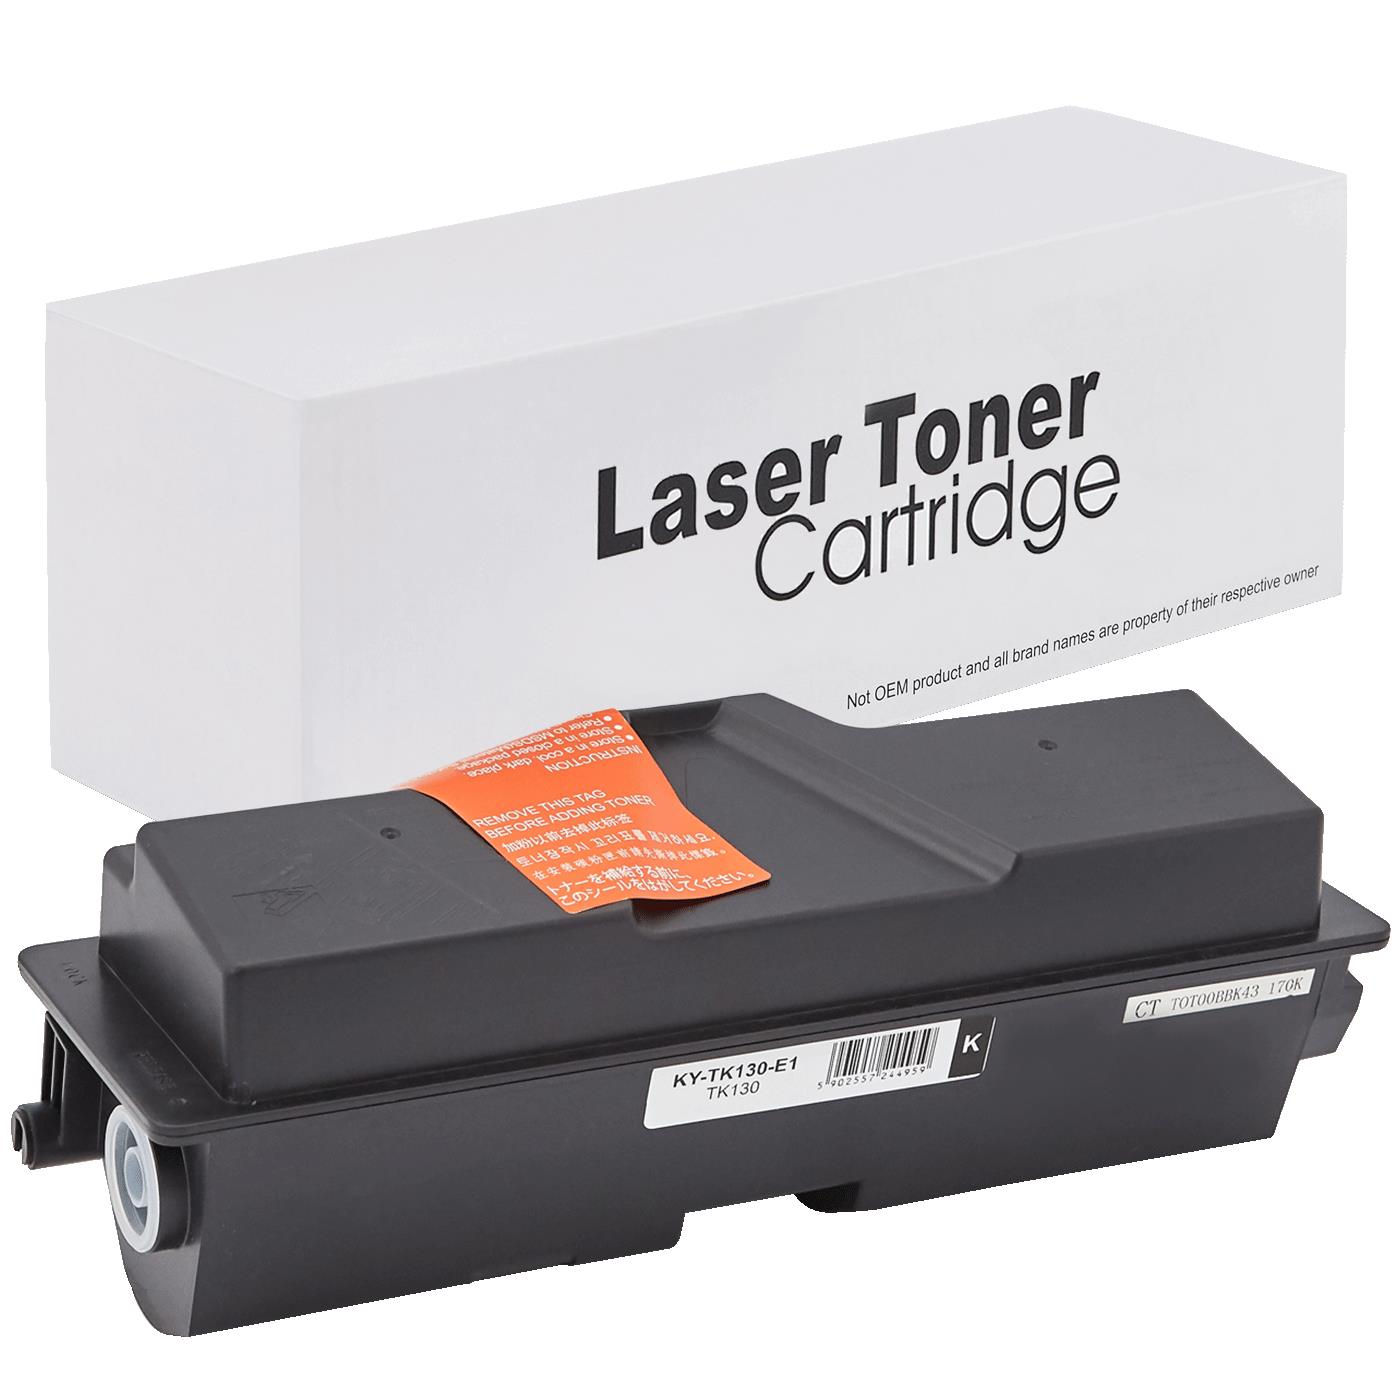 съвместима тонер касета за принтери и печатащи устройства на Kyocera Mita FS 1028MFP Toner KY-TK130 | TK130. Ниски цени, прецизно изпълнение, високо качество.